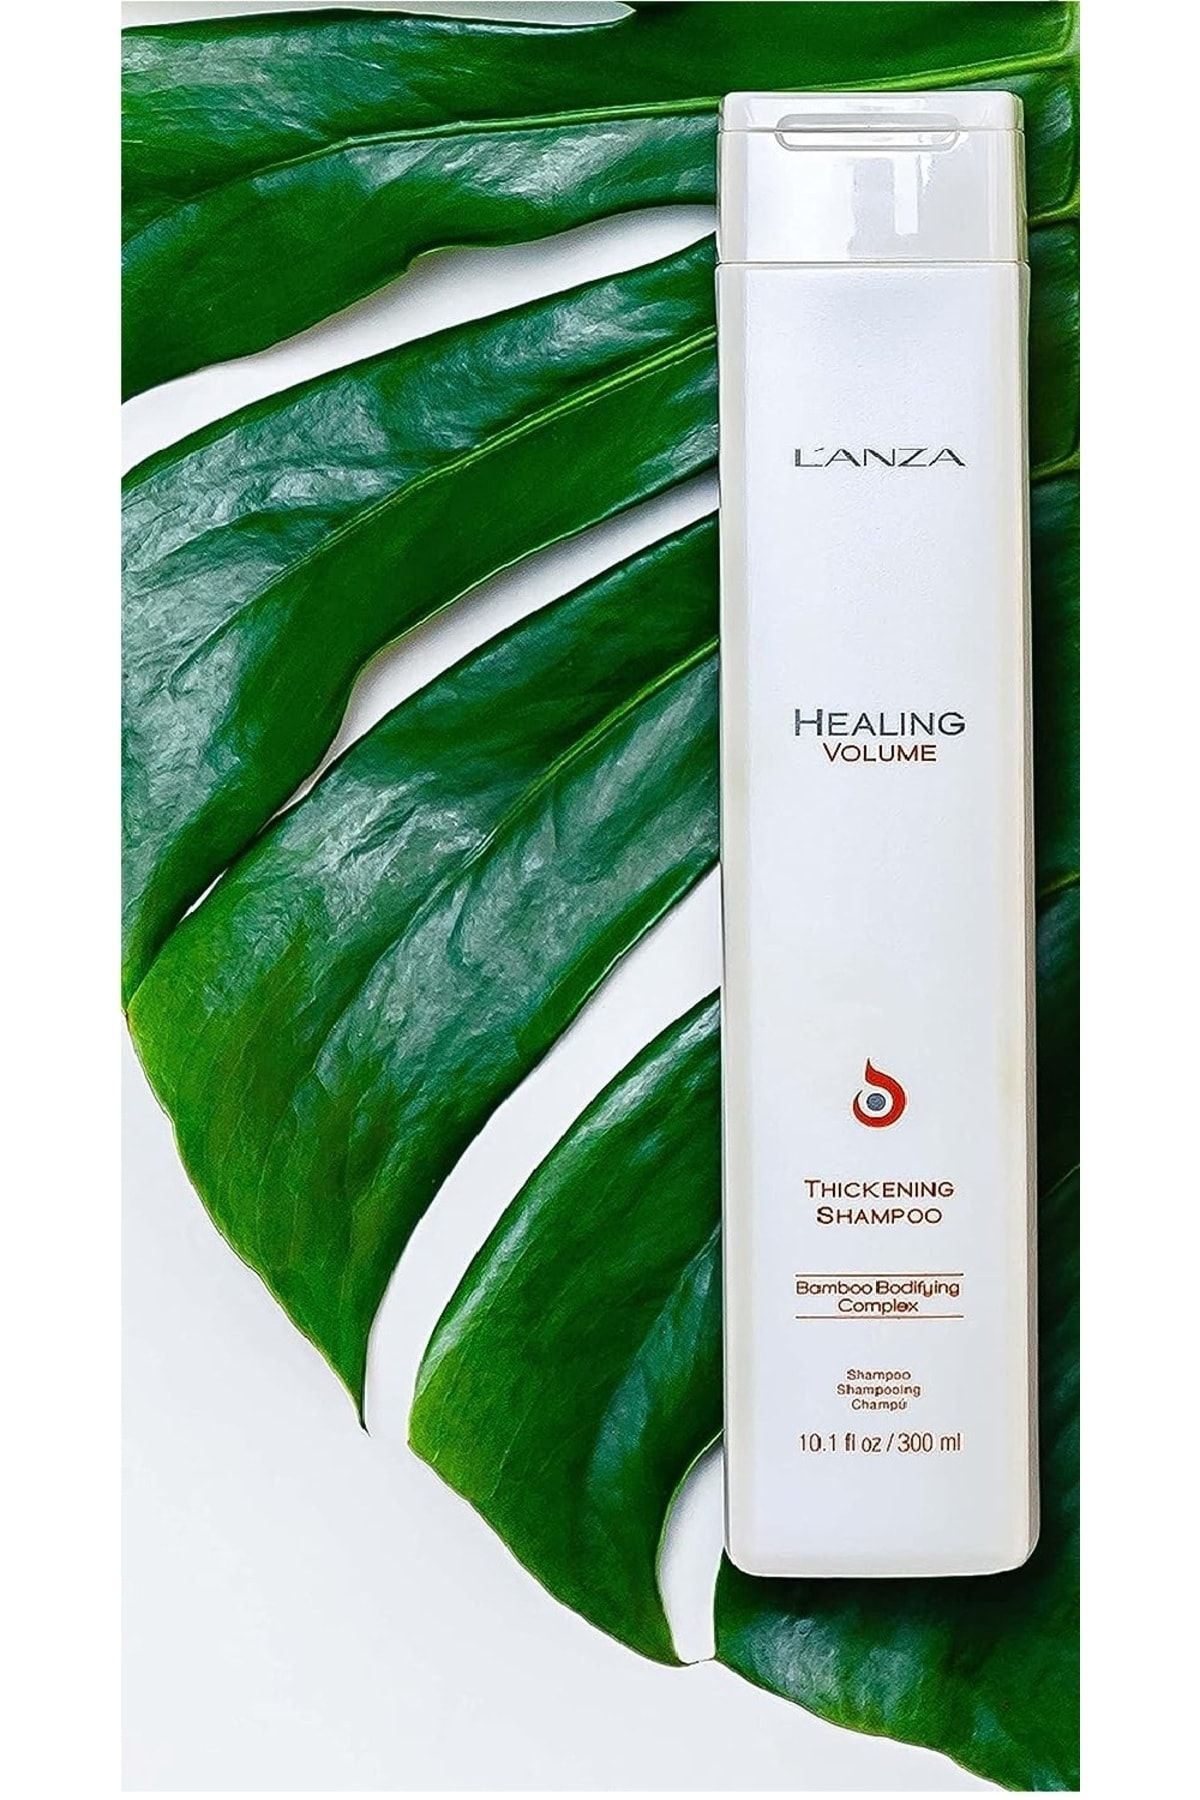 L'anza Healing Volume: Keratin İyileştirme Sistemi İçeren Glütensiz Şampuan (300ml) ECBeauty!Q559